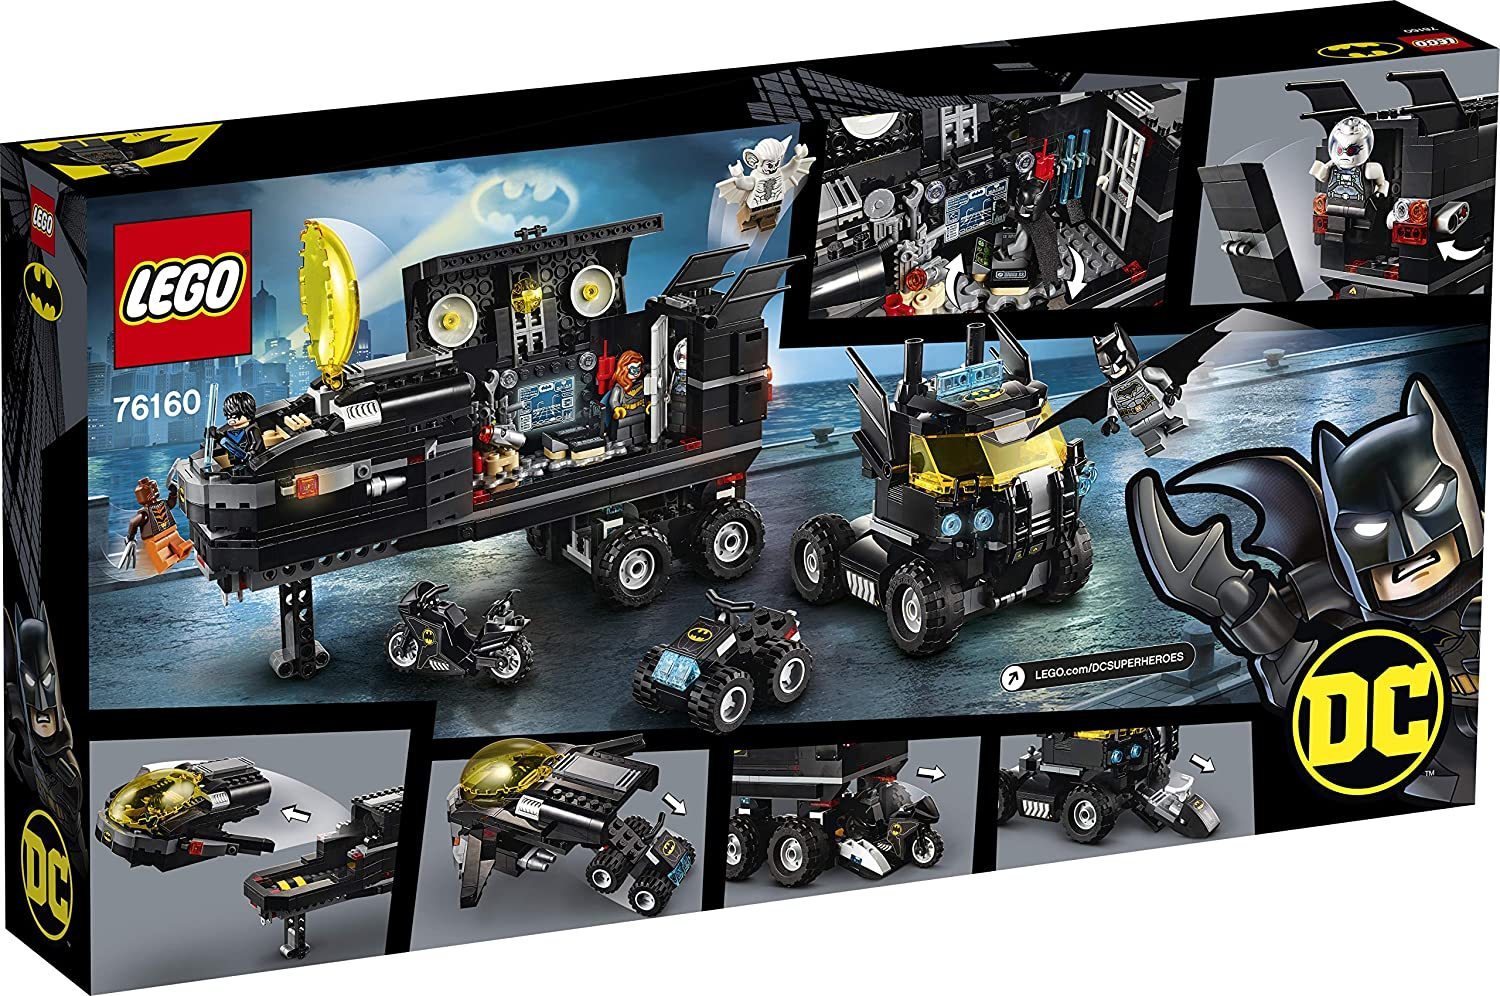 Lego 76160 - Mobil Bat INDUSTRIA 61